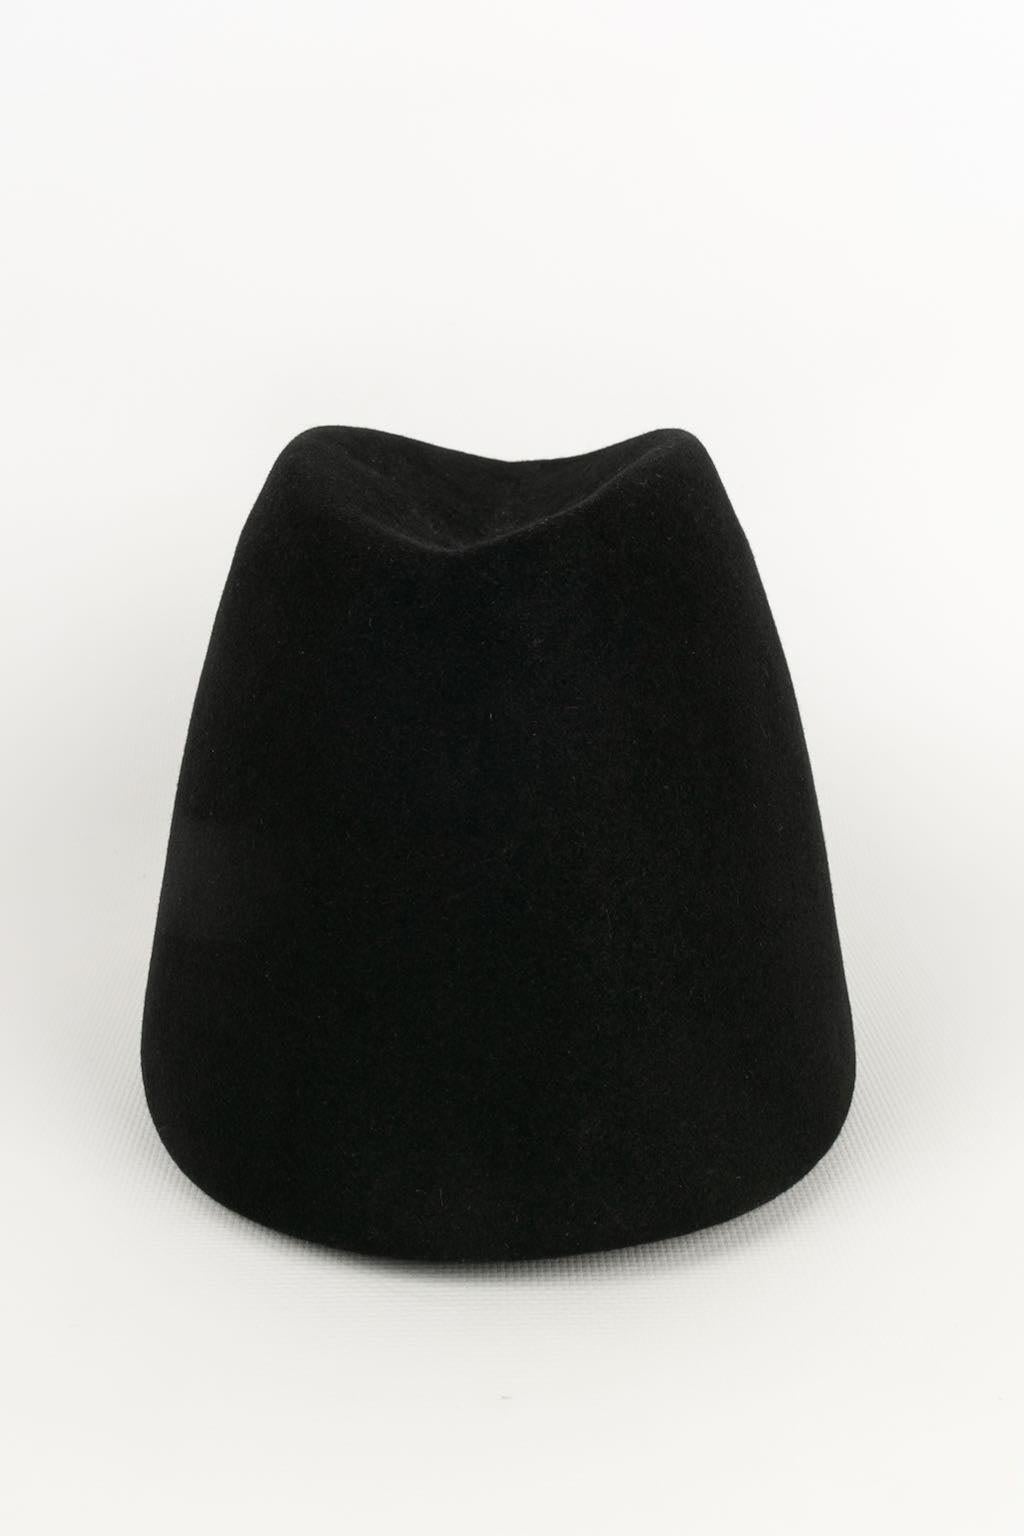 Women's Yves Saint Laurent Fez Hat in Black Felt